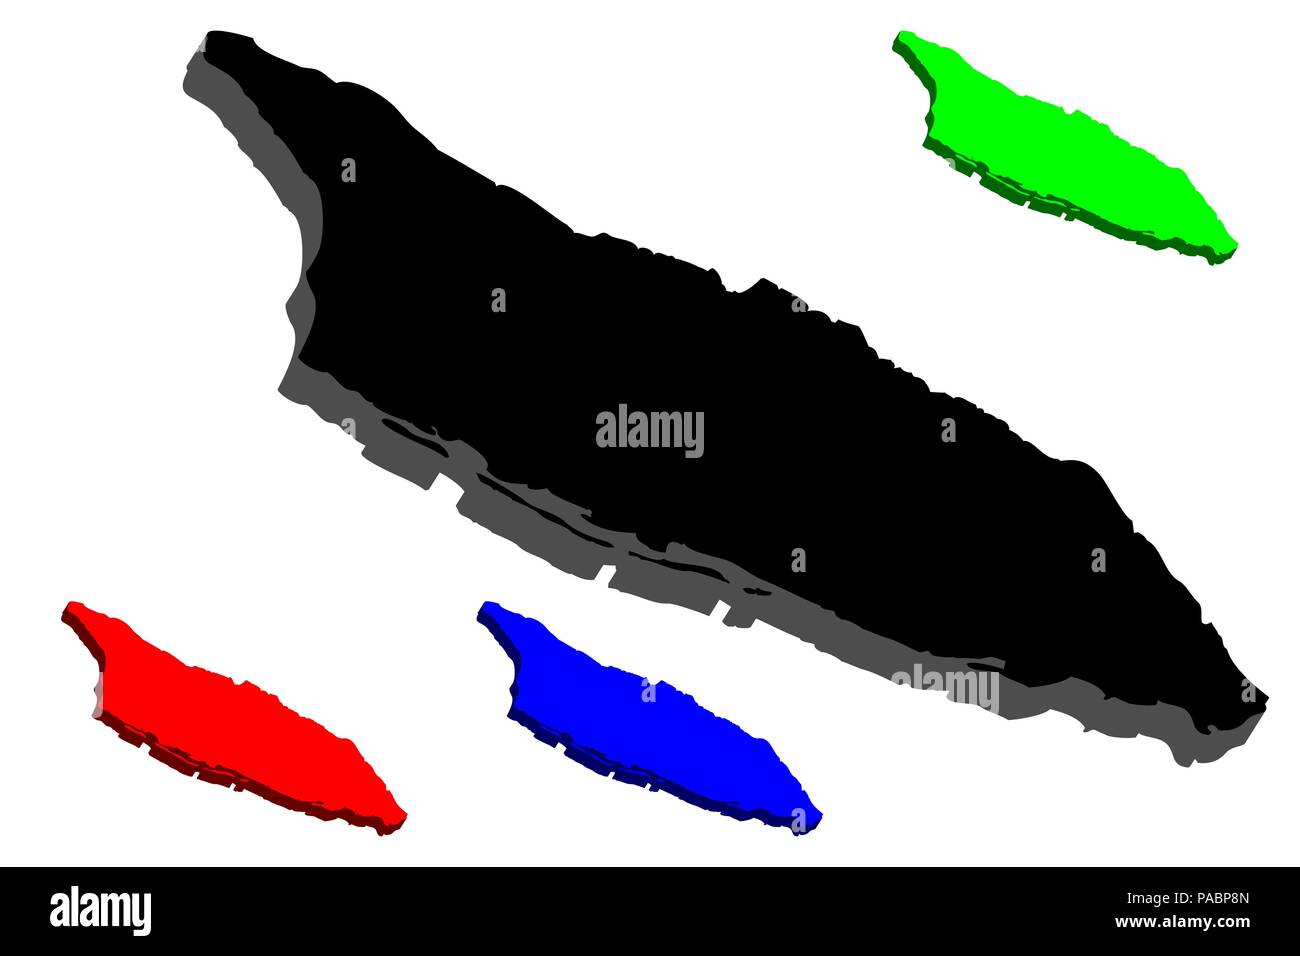 Carte 3D d'Aruba (île de Royaume des Pays-Bas) - noir, rouge, bleu et vert - vector illustration Illustration de Vecteur